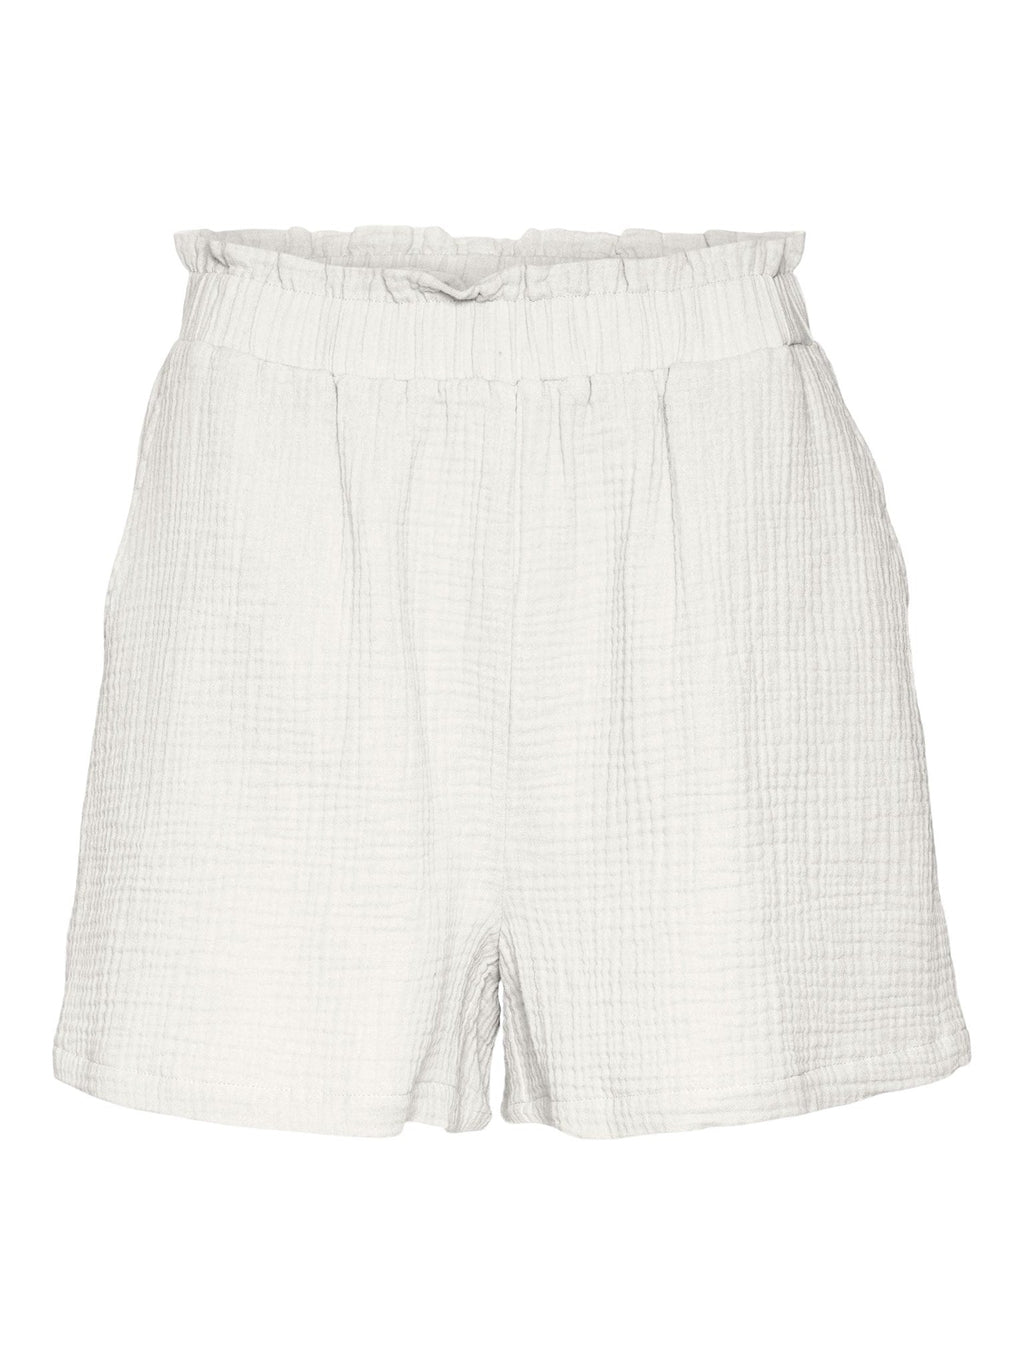 Pantalones cortos de cintura alta natali - Blancanieves